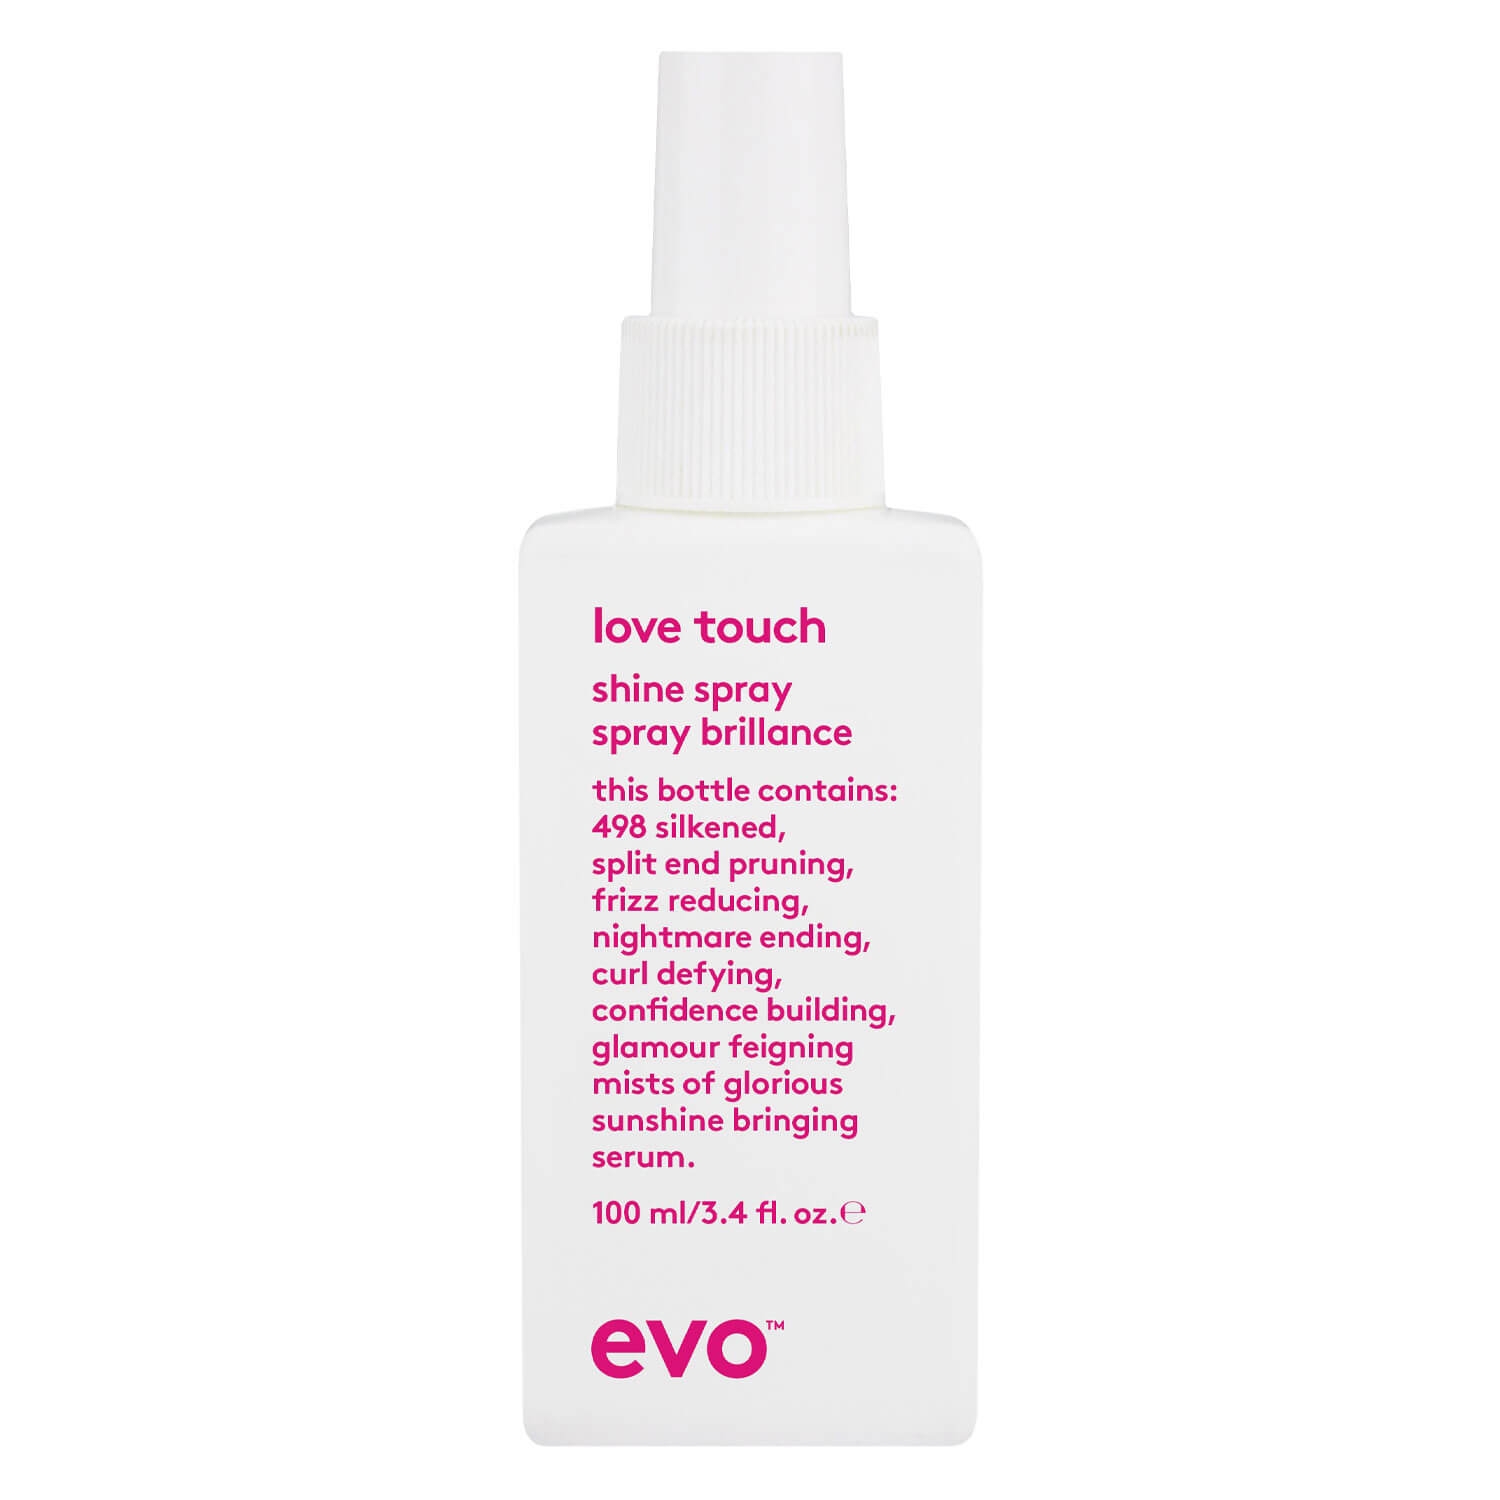 Produktbild von evo smooth - love touch shine spray